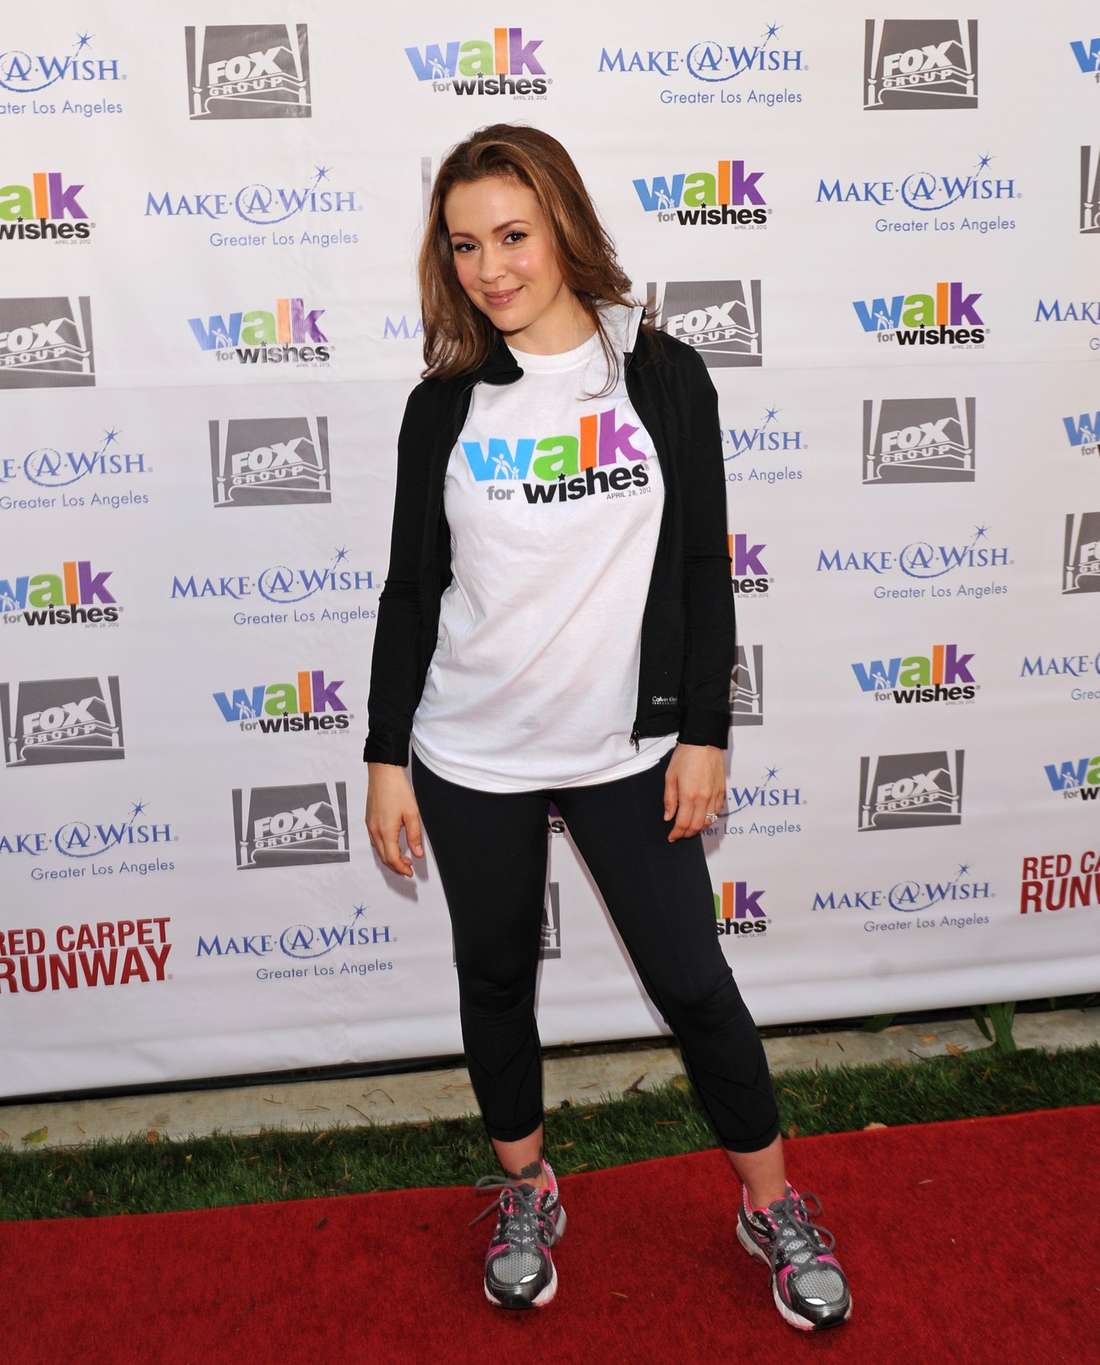 Alyssa Milano - 2012 Walk for Wishes Fundraiser Event in LA